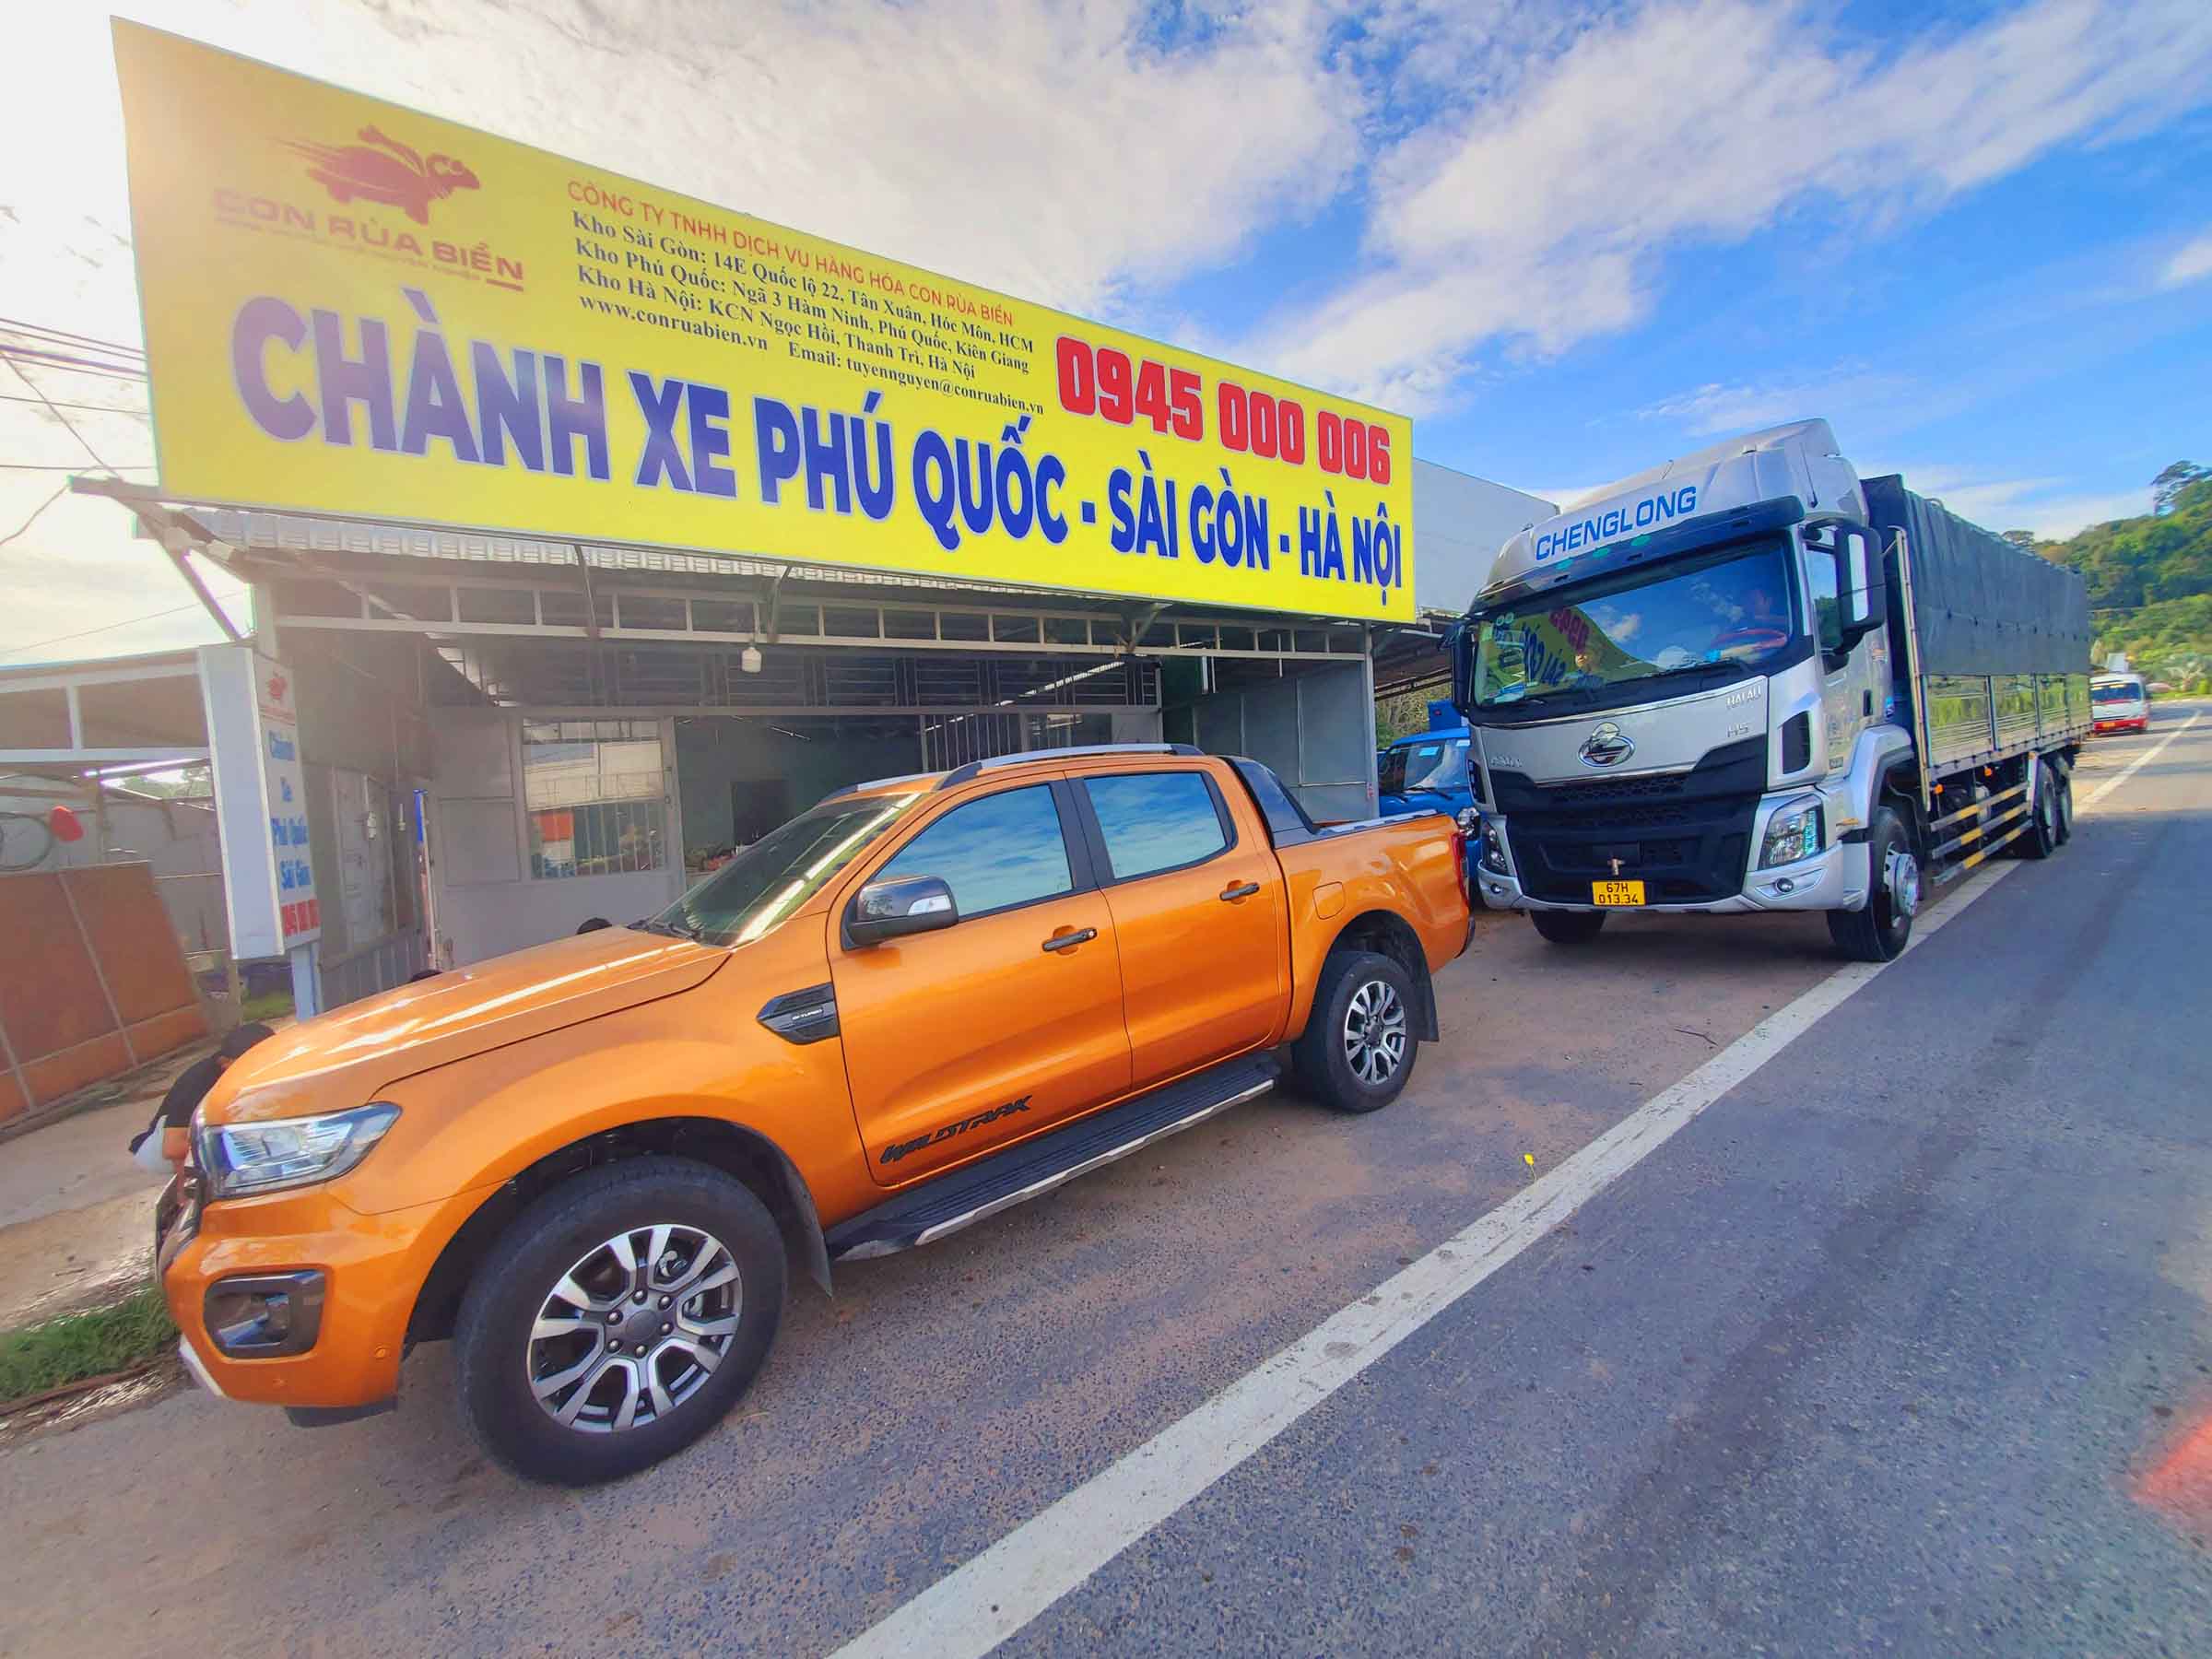 Chanh xe van chuyen hang hoa di Phu Quoc 2022 05 26 5